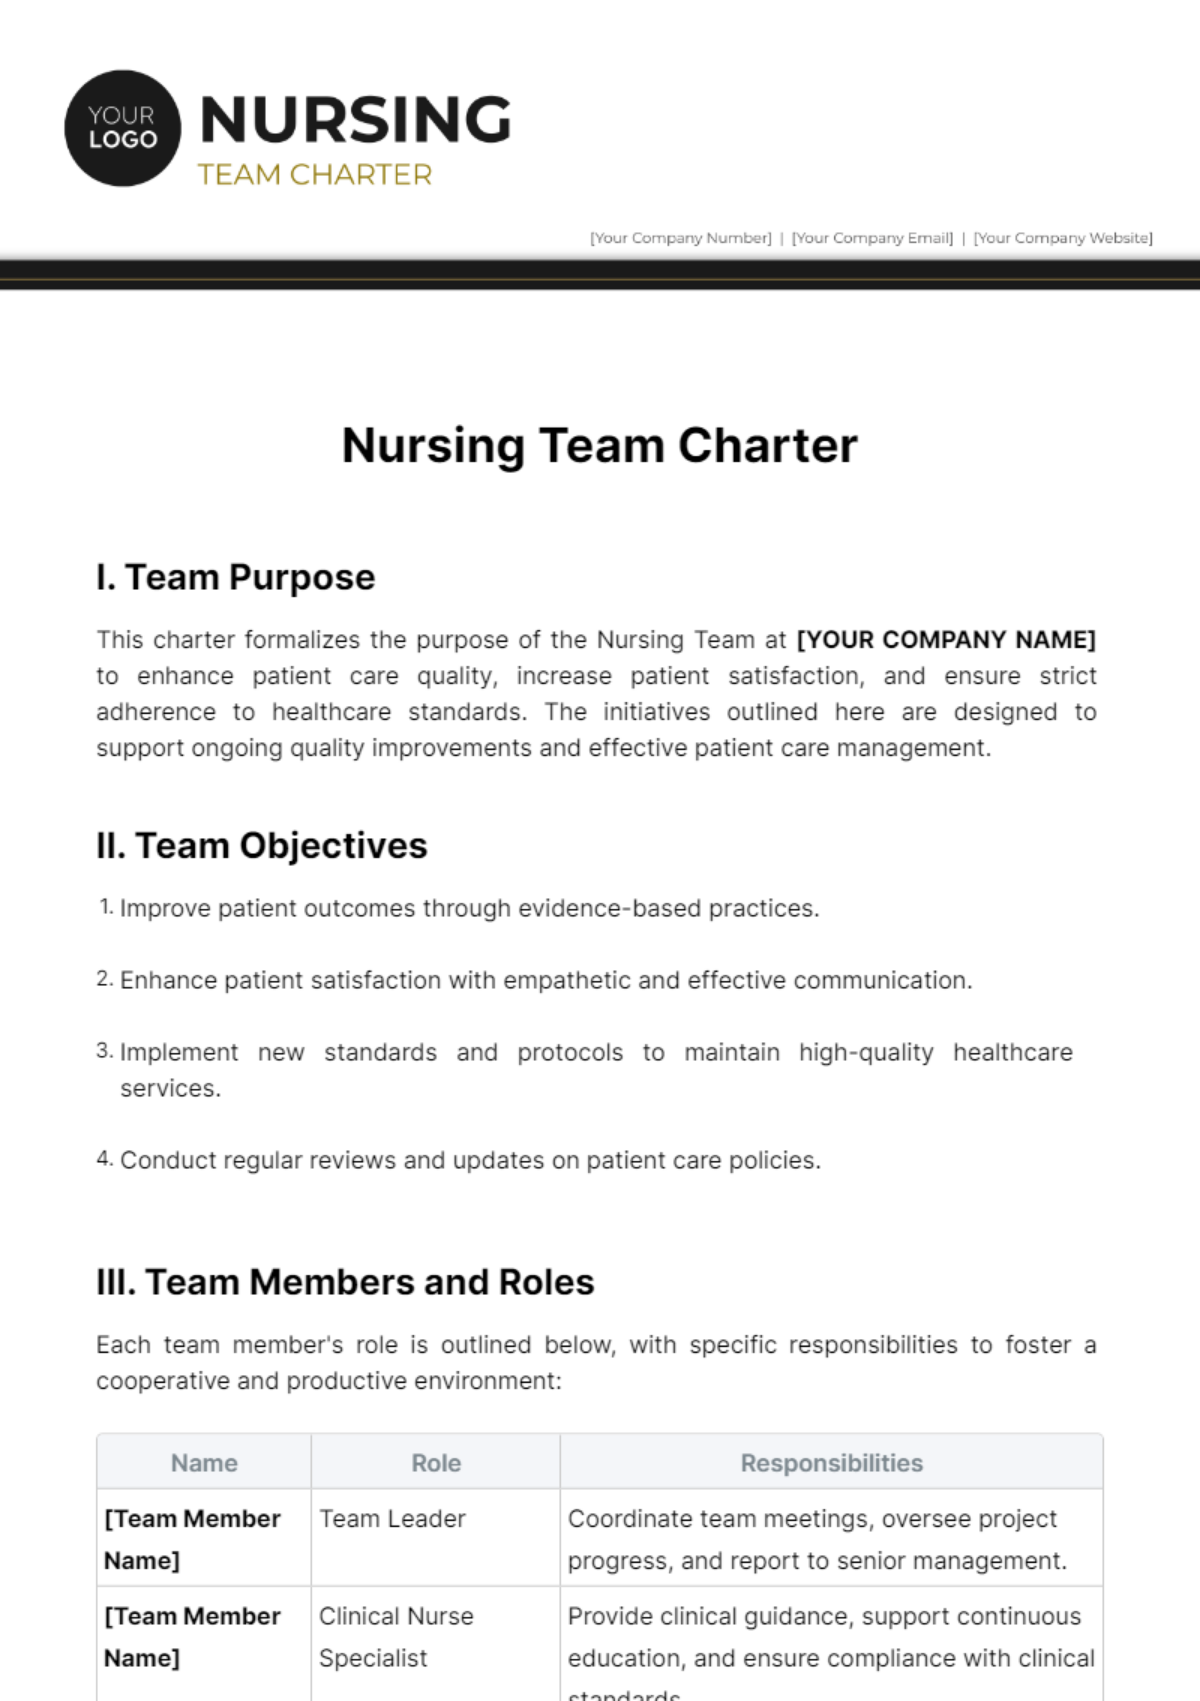 Nursing Team Charter Template